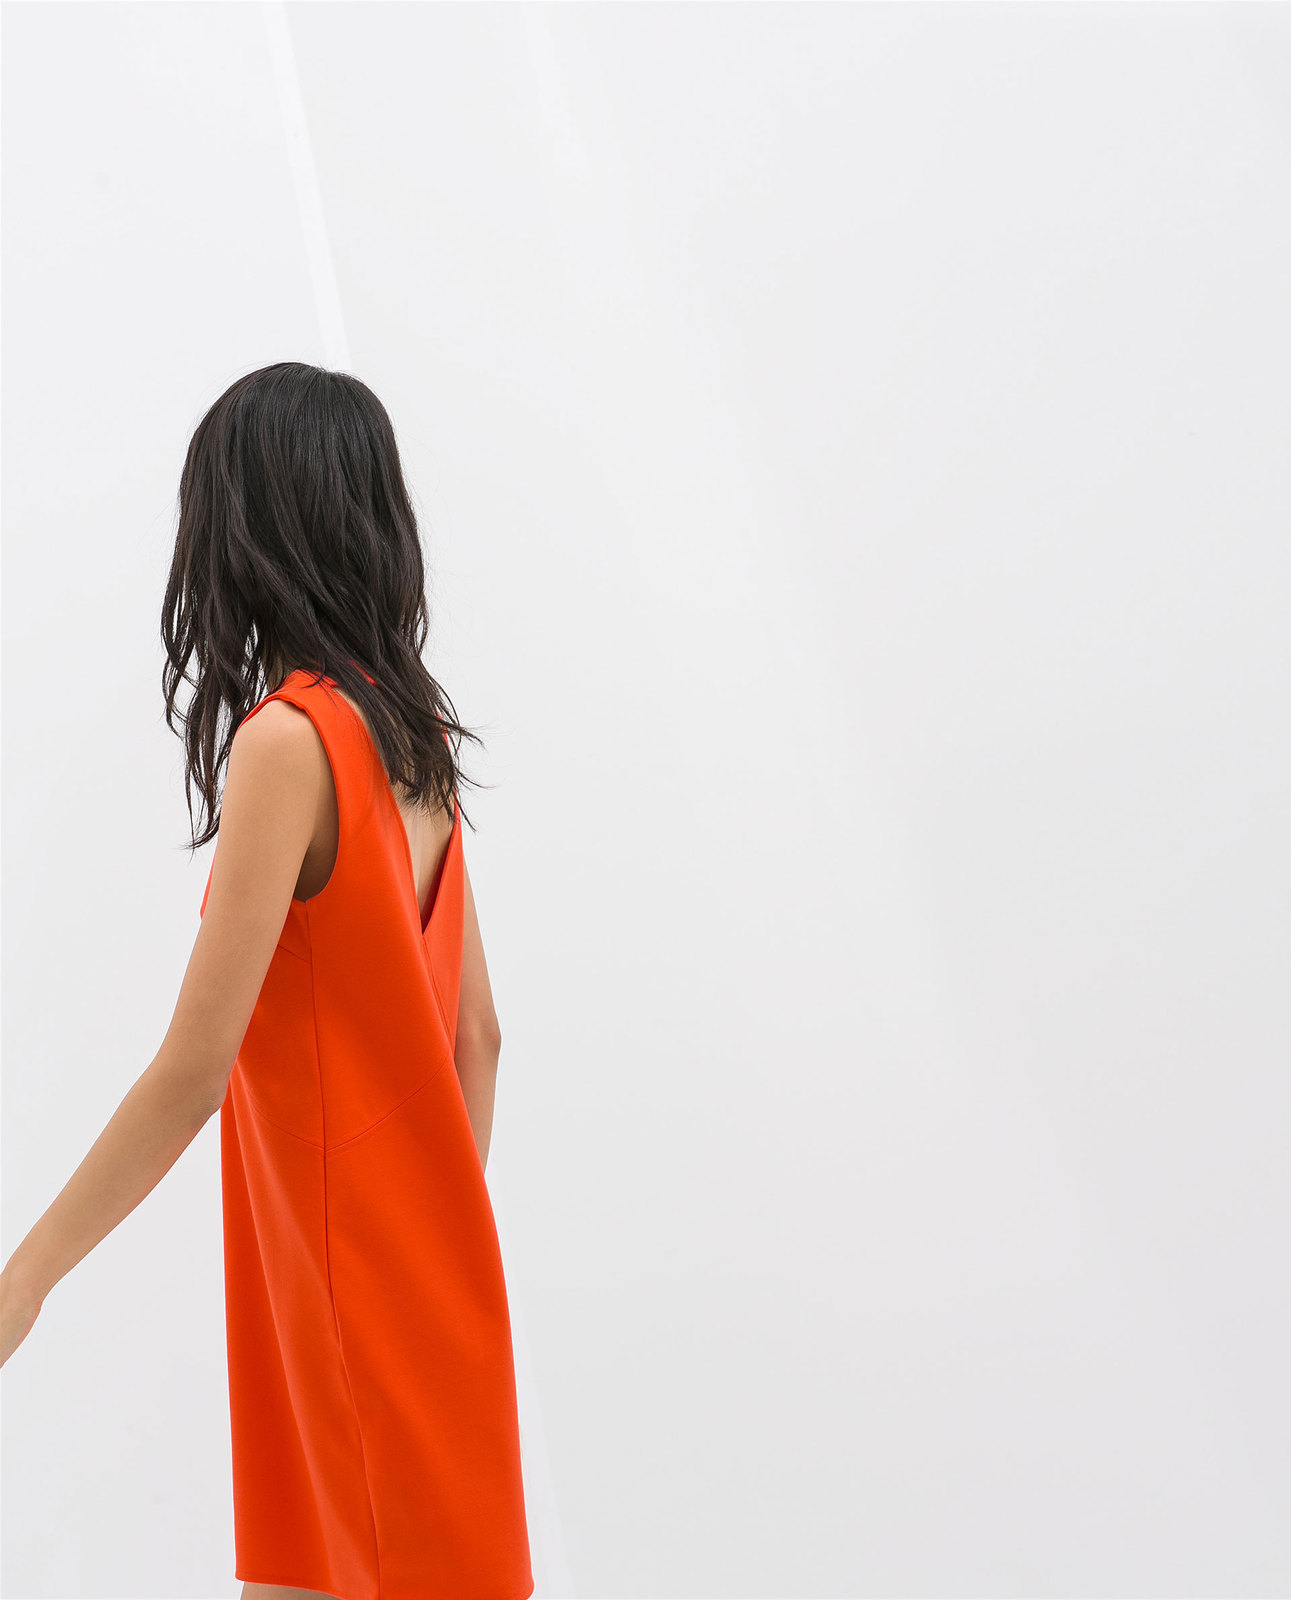 Zara hátul kivágott narancs ruha 2014.4.15 fotója